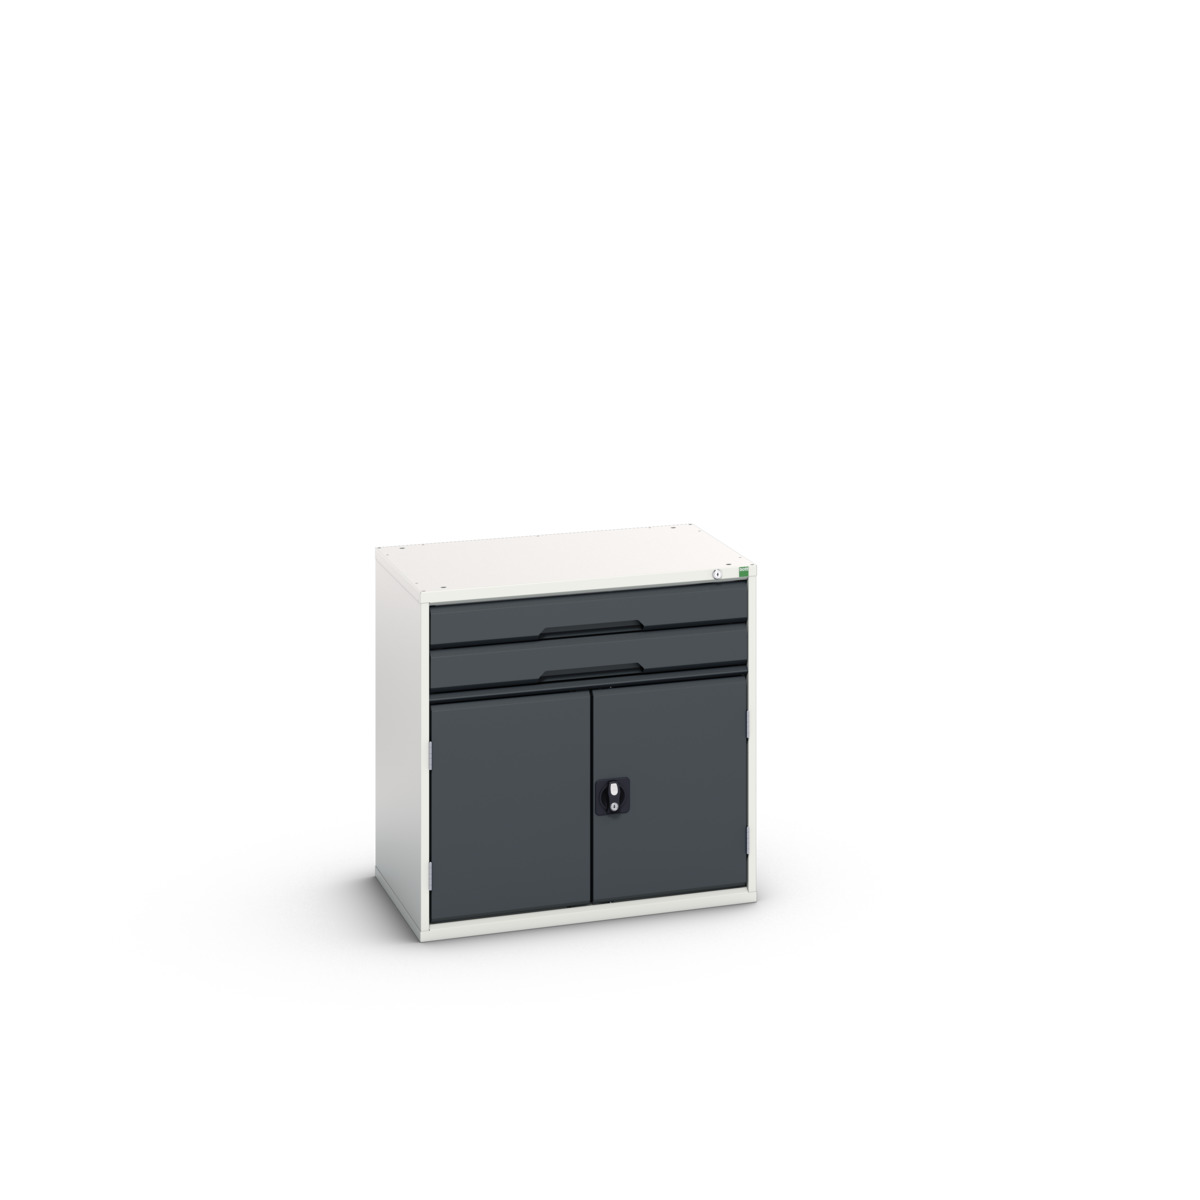 16925416.19 - verso drawer-door cabinet